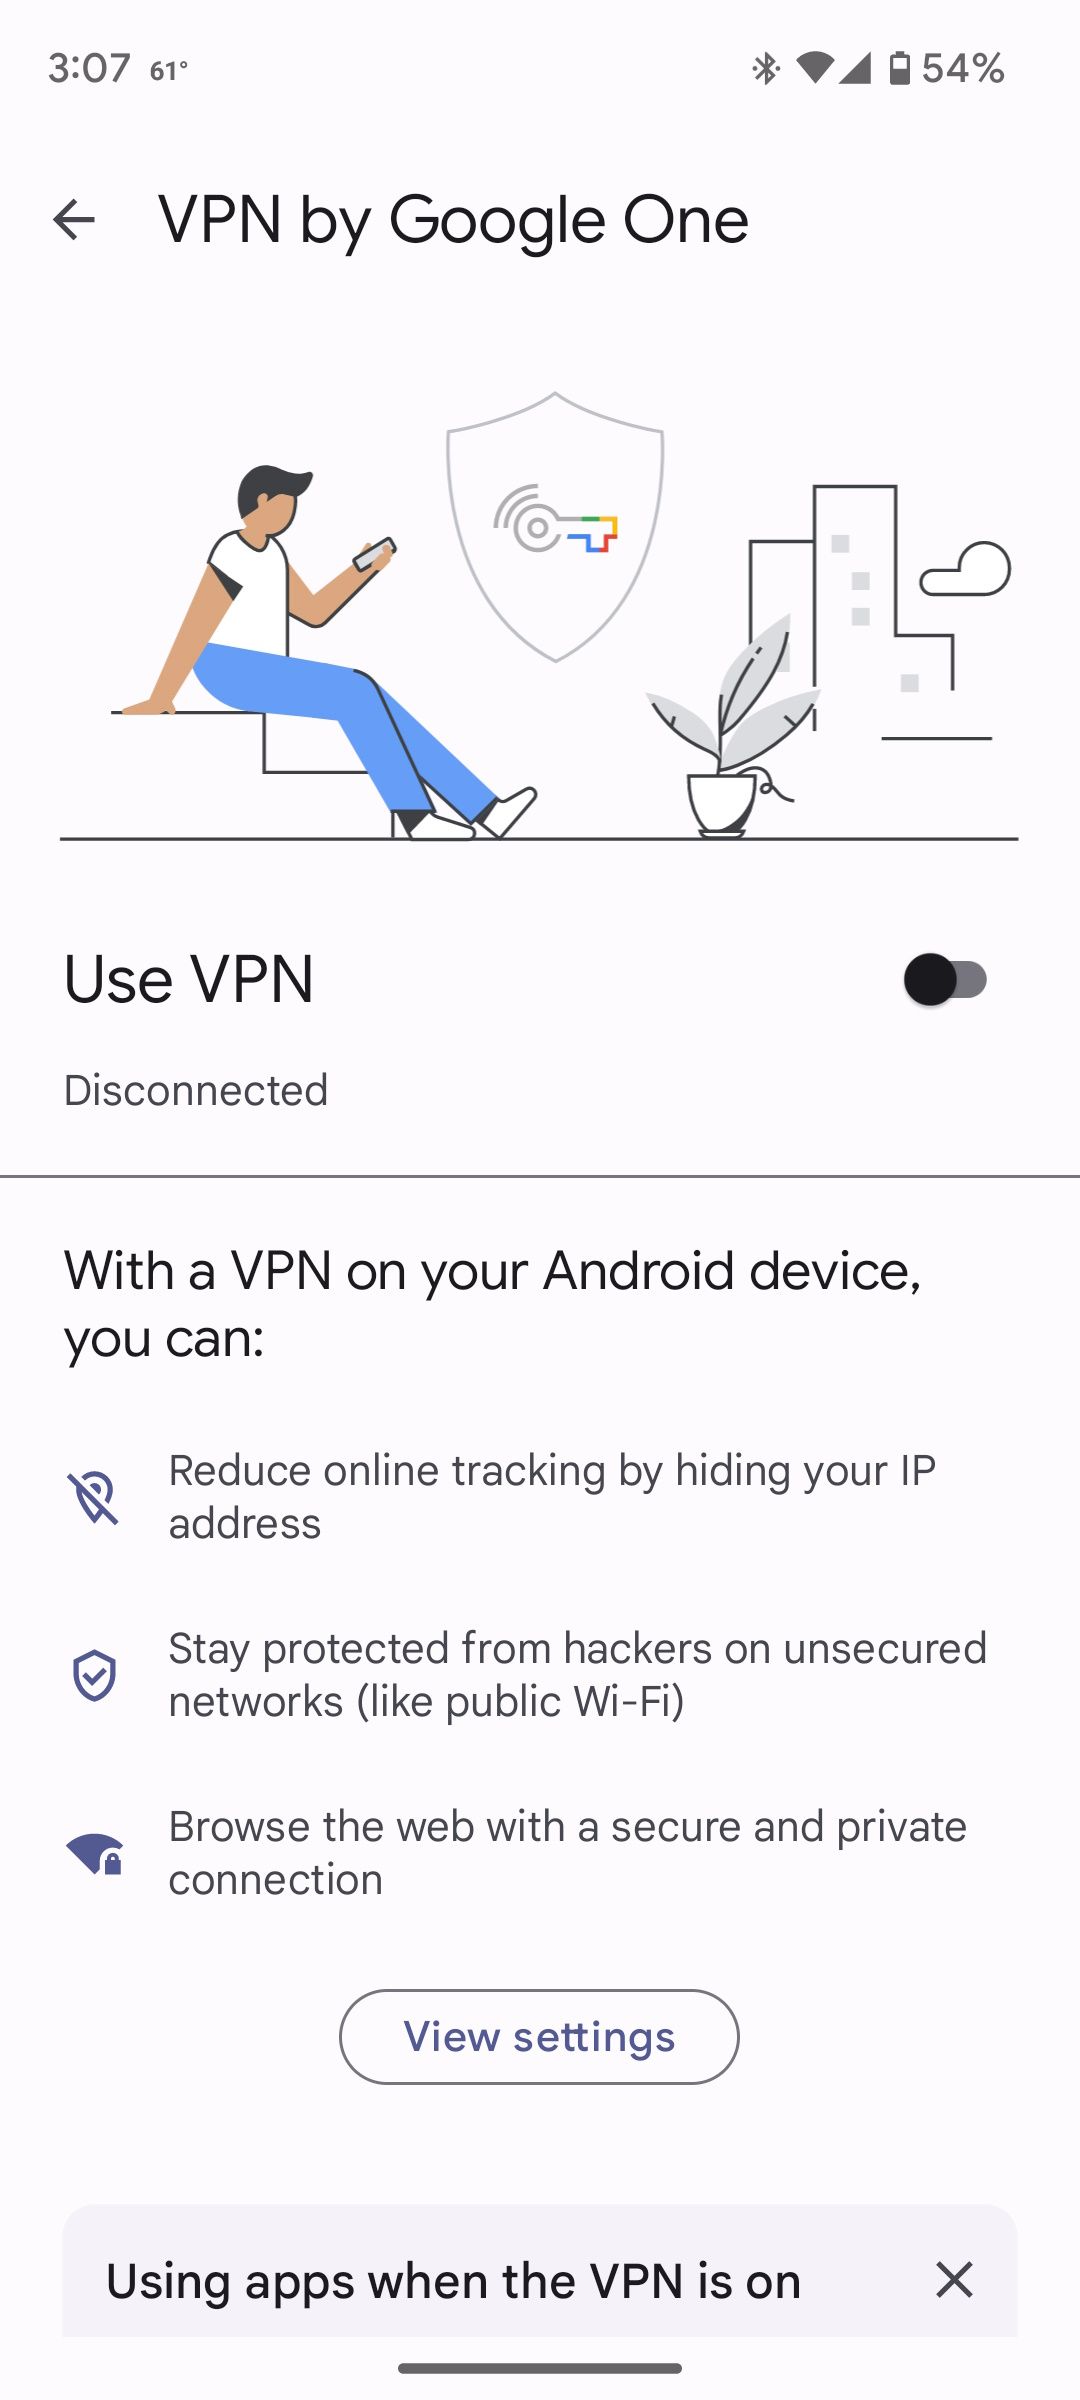 صفحه اصلی در VPN توسط Google One